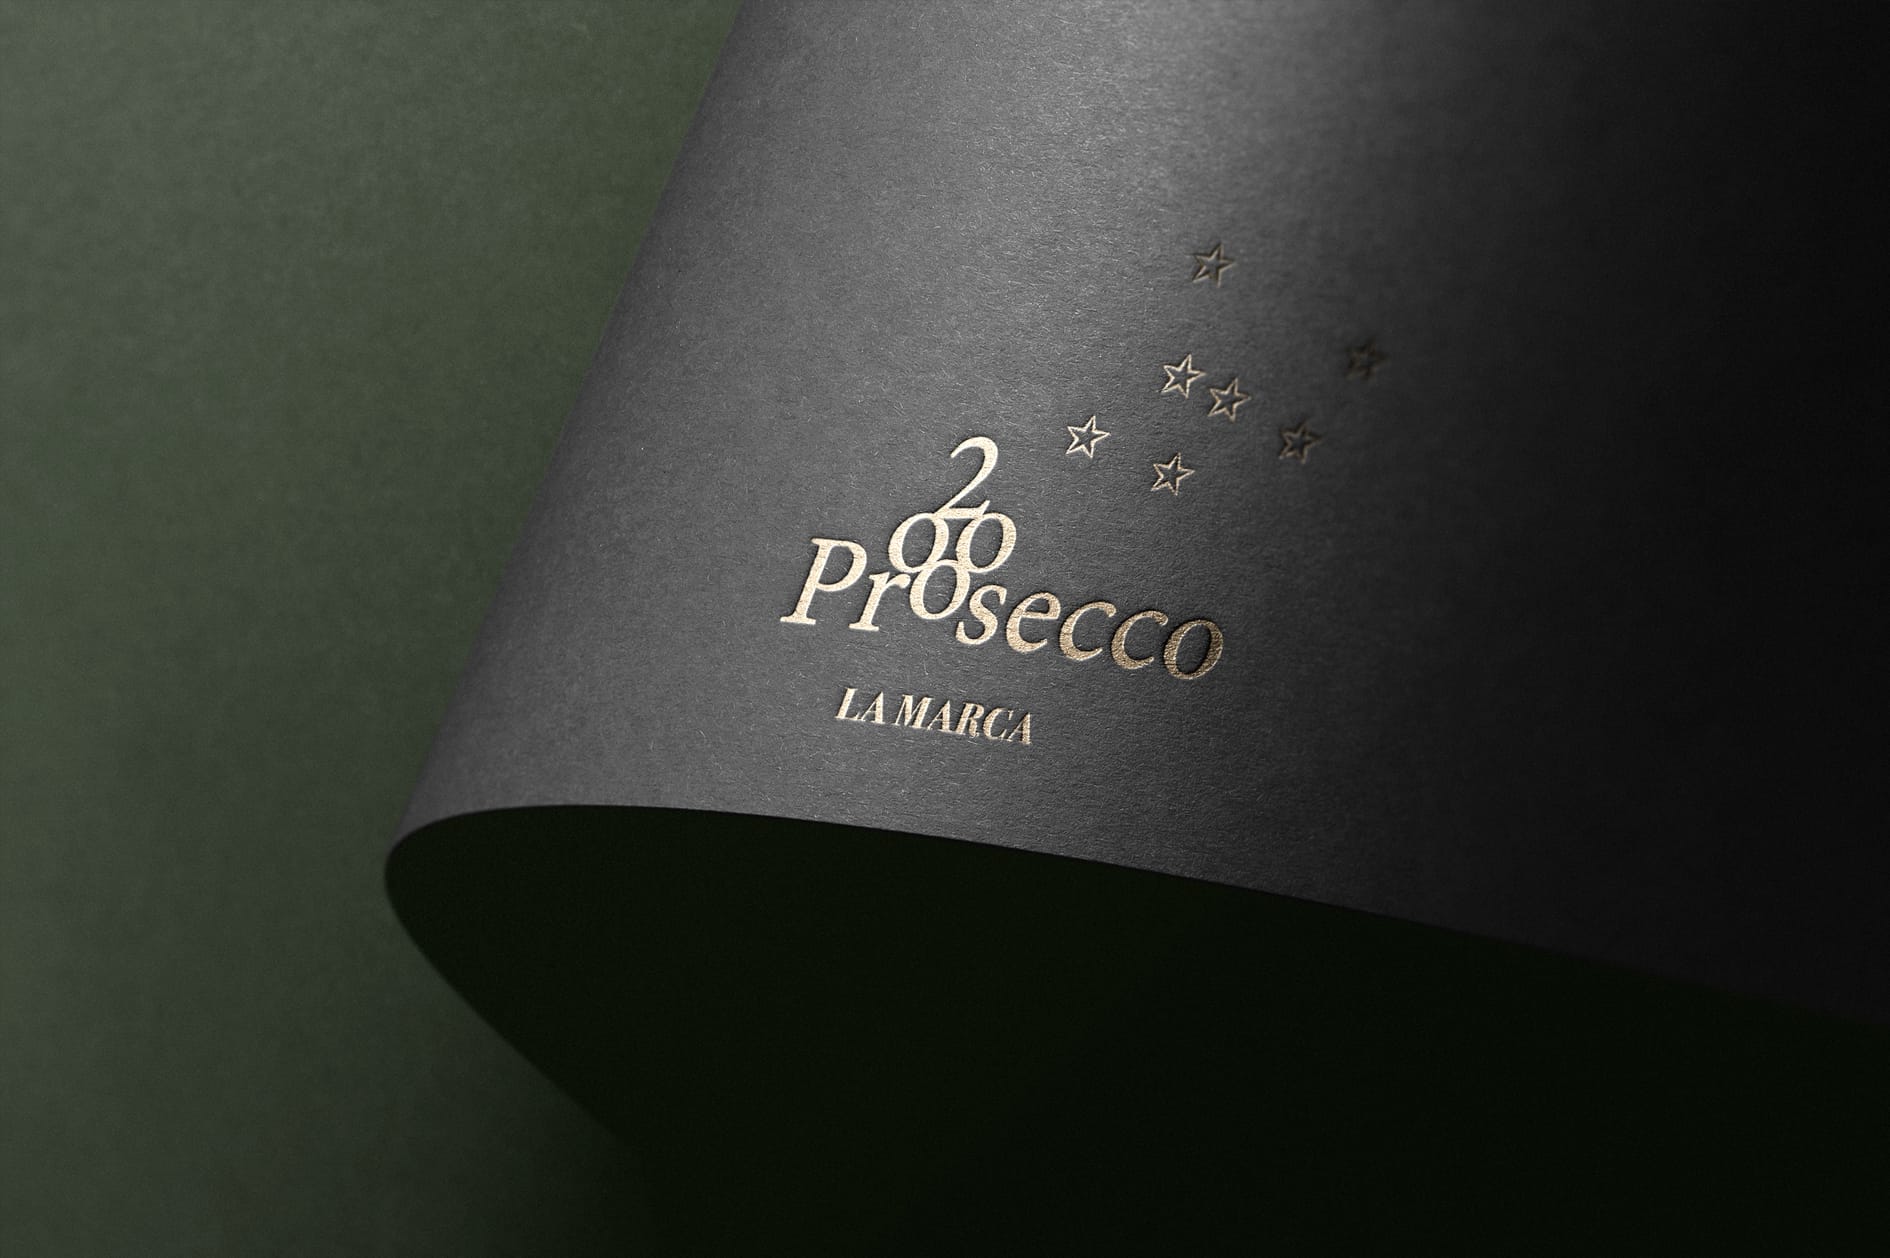 Etichetta vino - progetto grafico